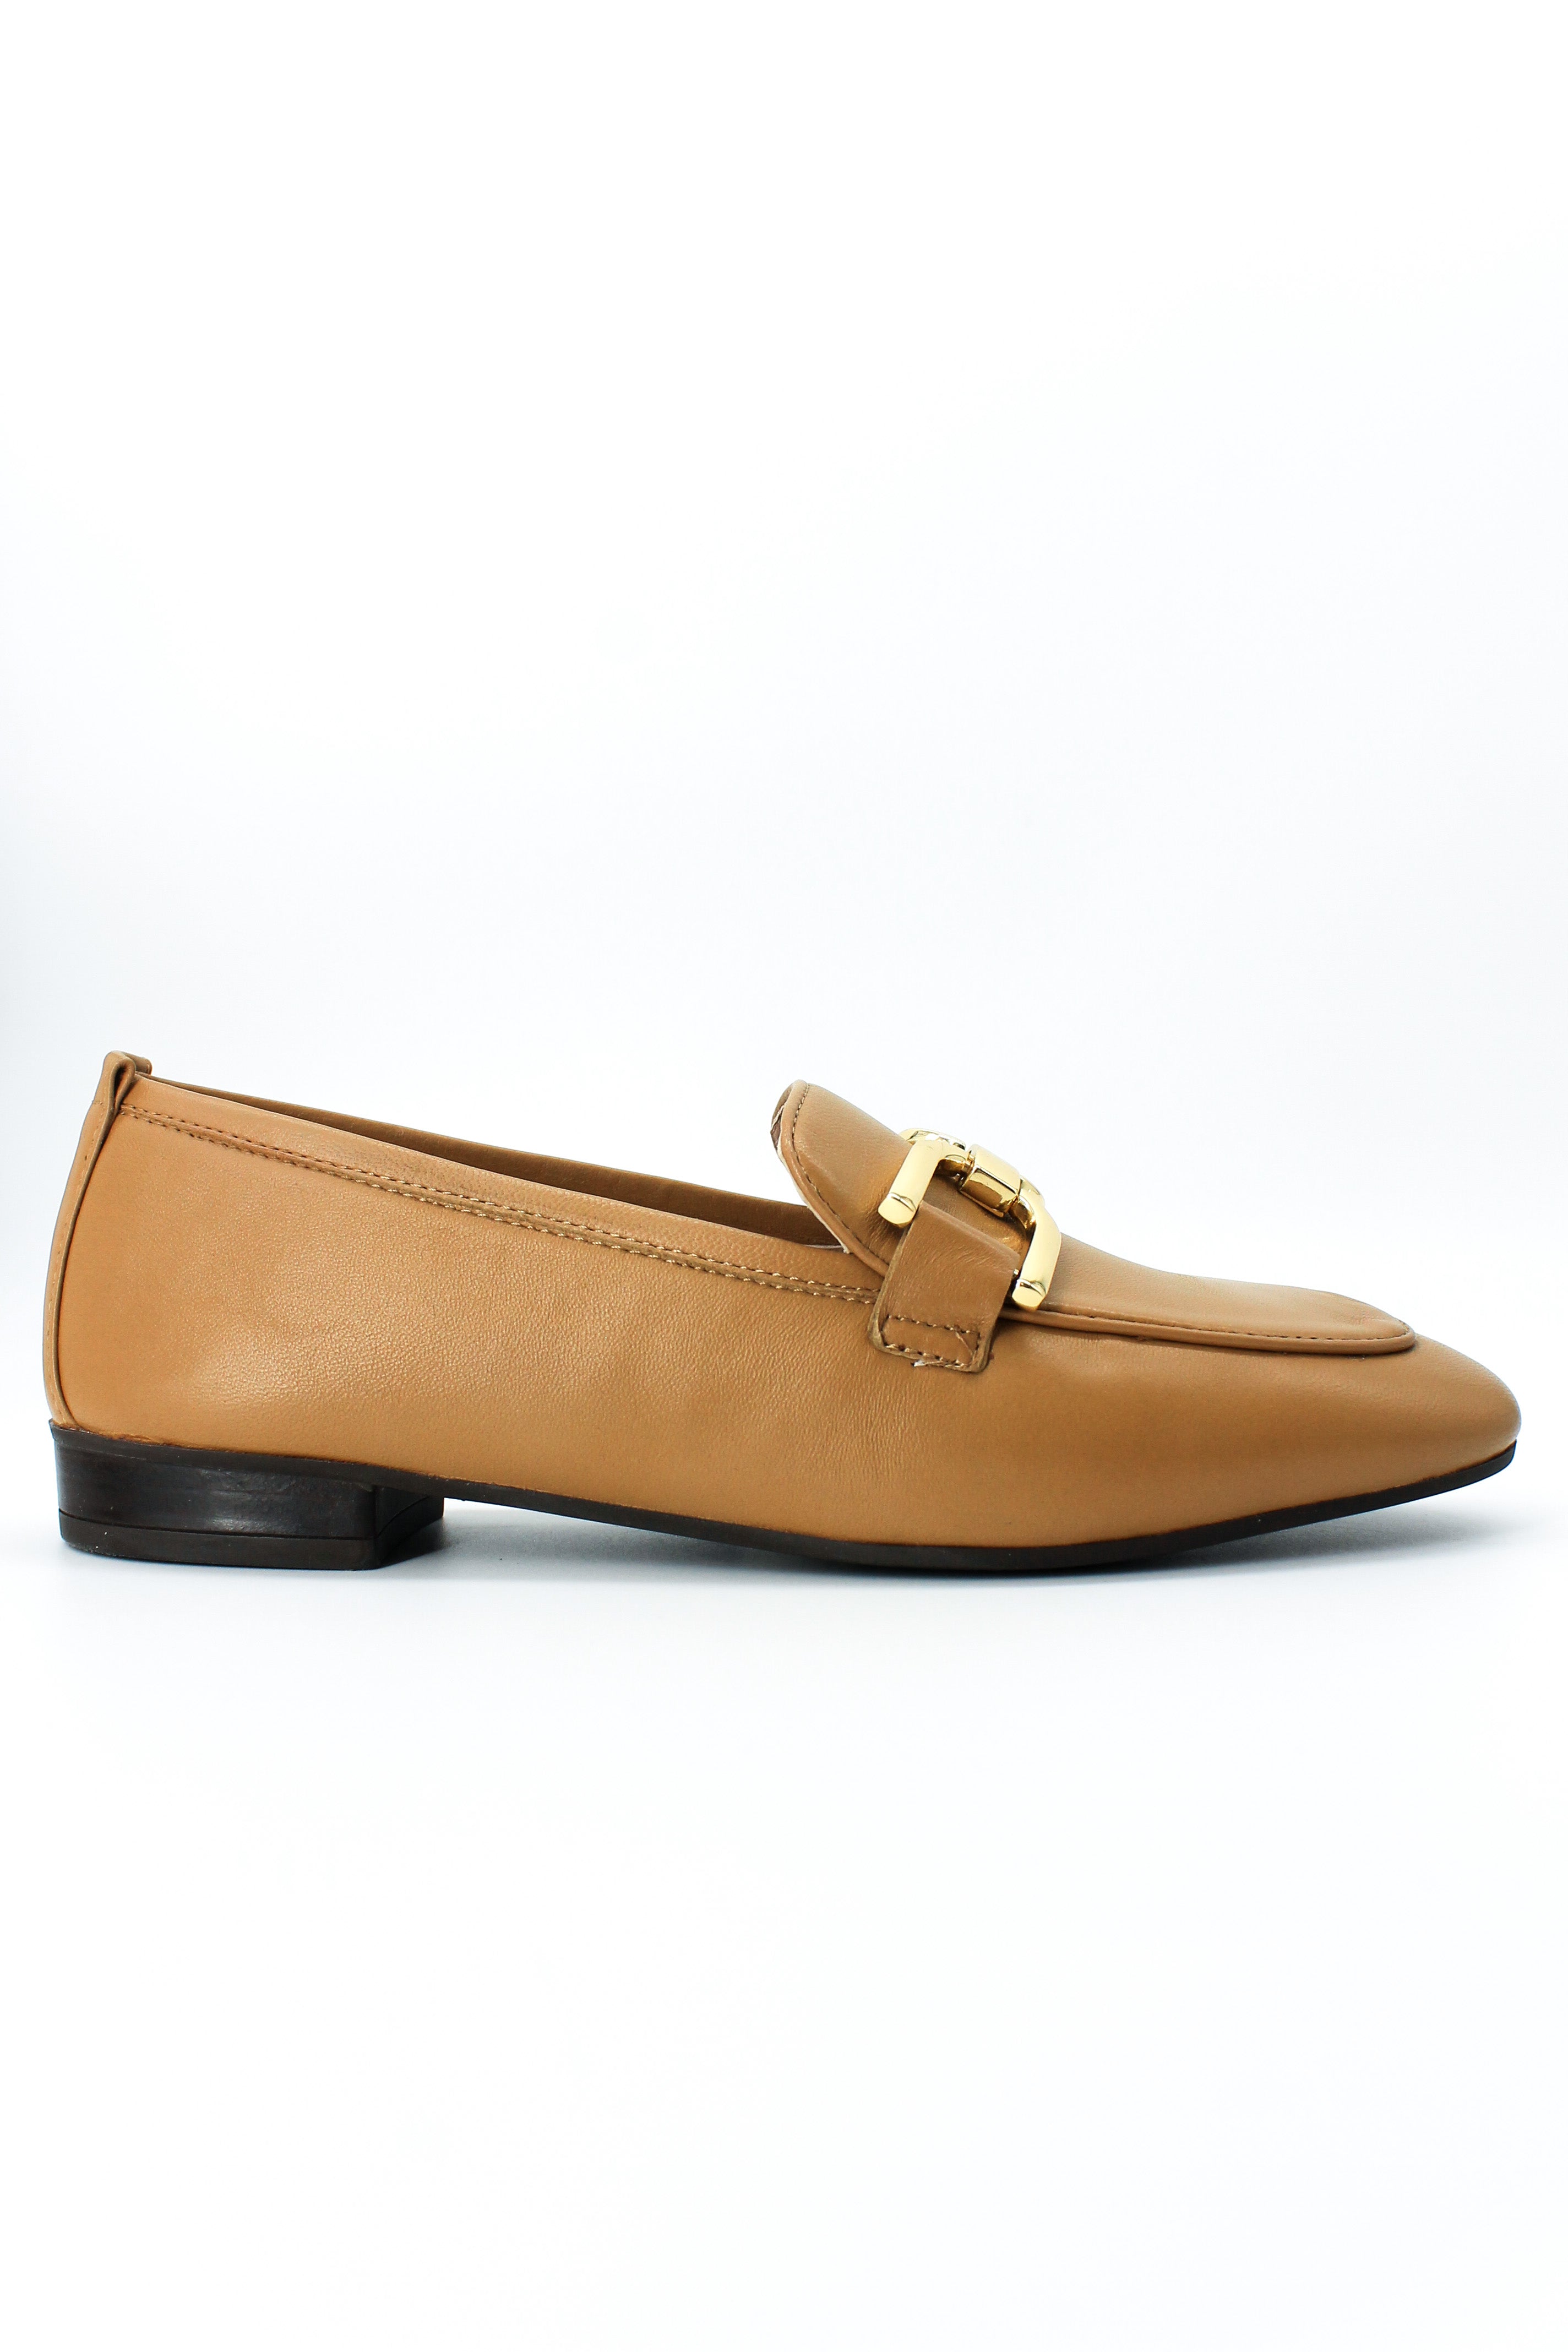 Unisa Baxter Camel – Shoe Style International